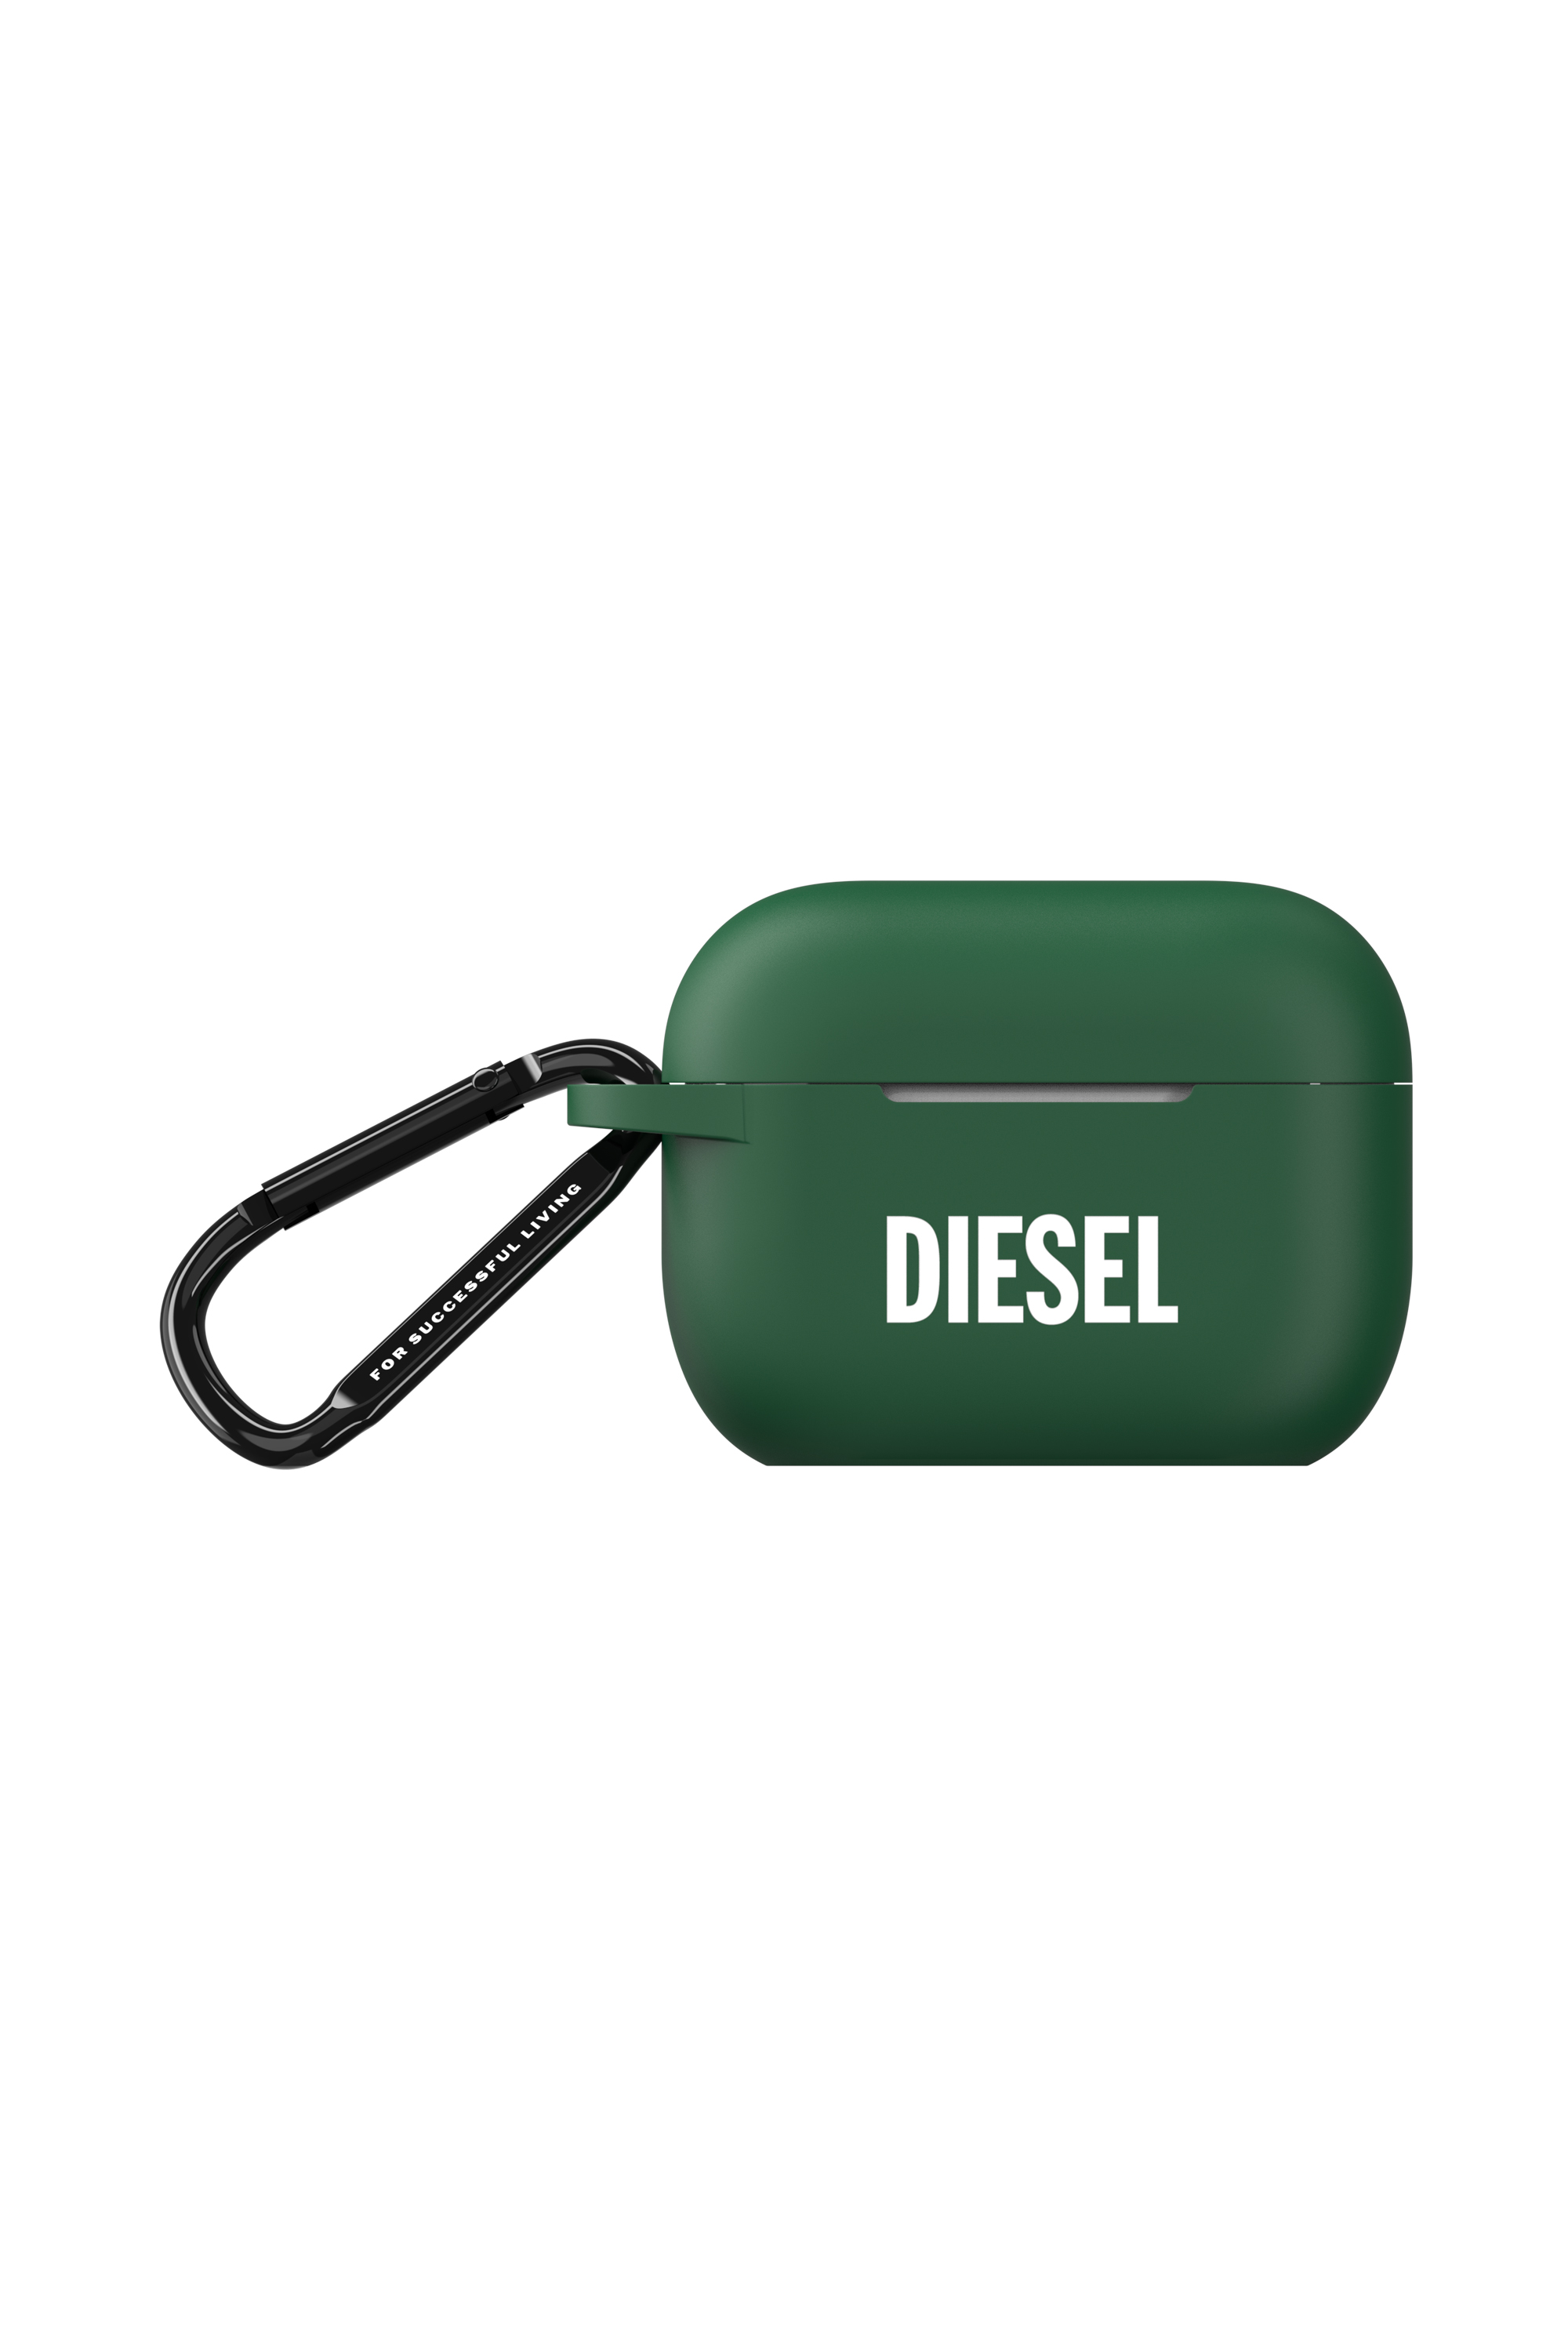 Diesel - 49671 MOULDED CASE, Verde - Image 1